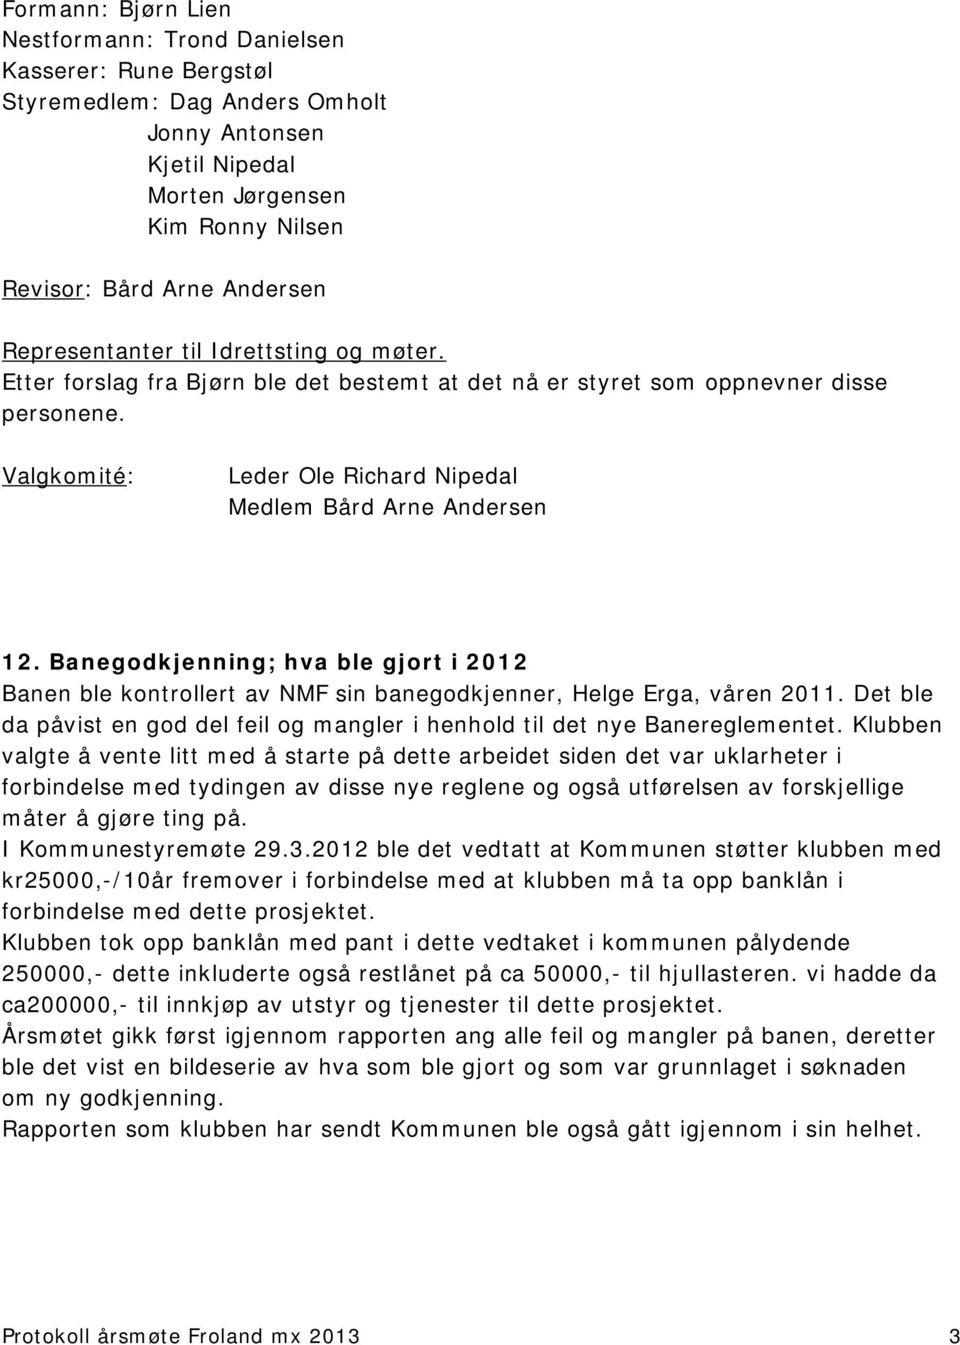 Banegodkjenning; hva ble gjort i 2012 Banen ble kontrollert av NMF sin banegodkjenner, Helge Erga, våren 2011. Det ble da påvist en god del feil og mangler i henhold til det nye Banereglementet.